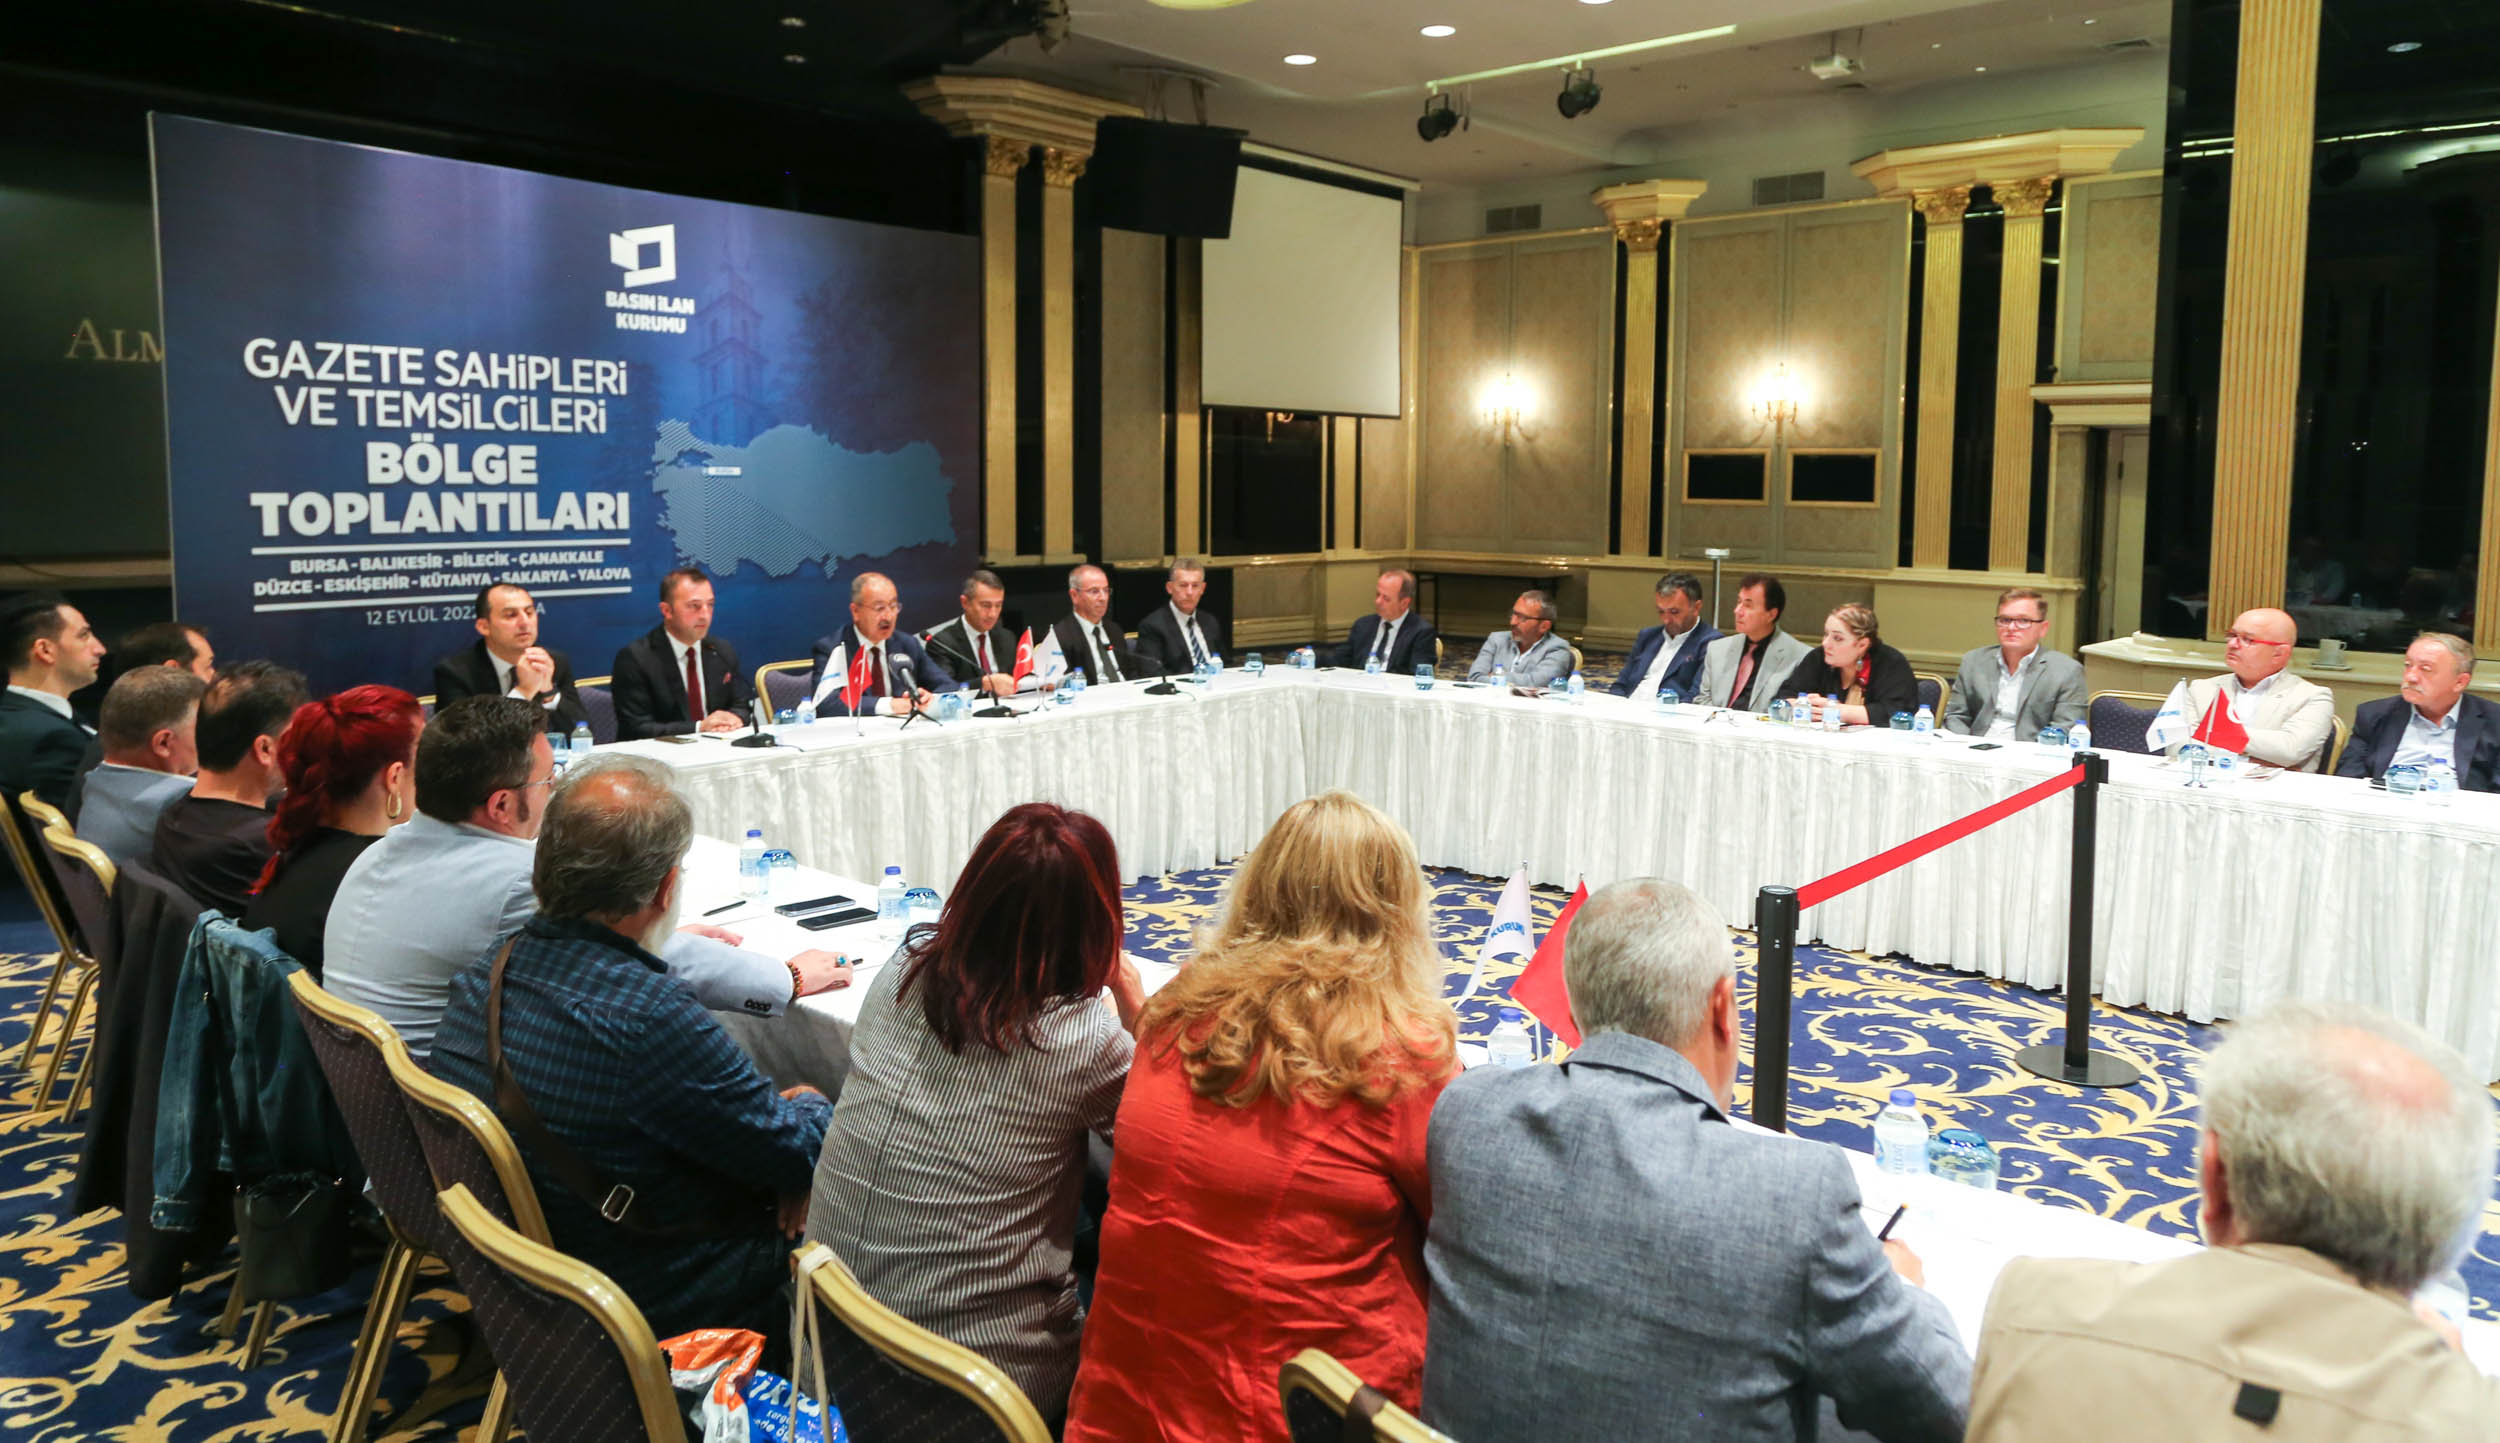 Gazete Sahipleri ve Temsilcileri Bölge Toplantısı - Bursa